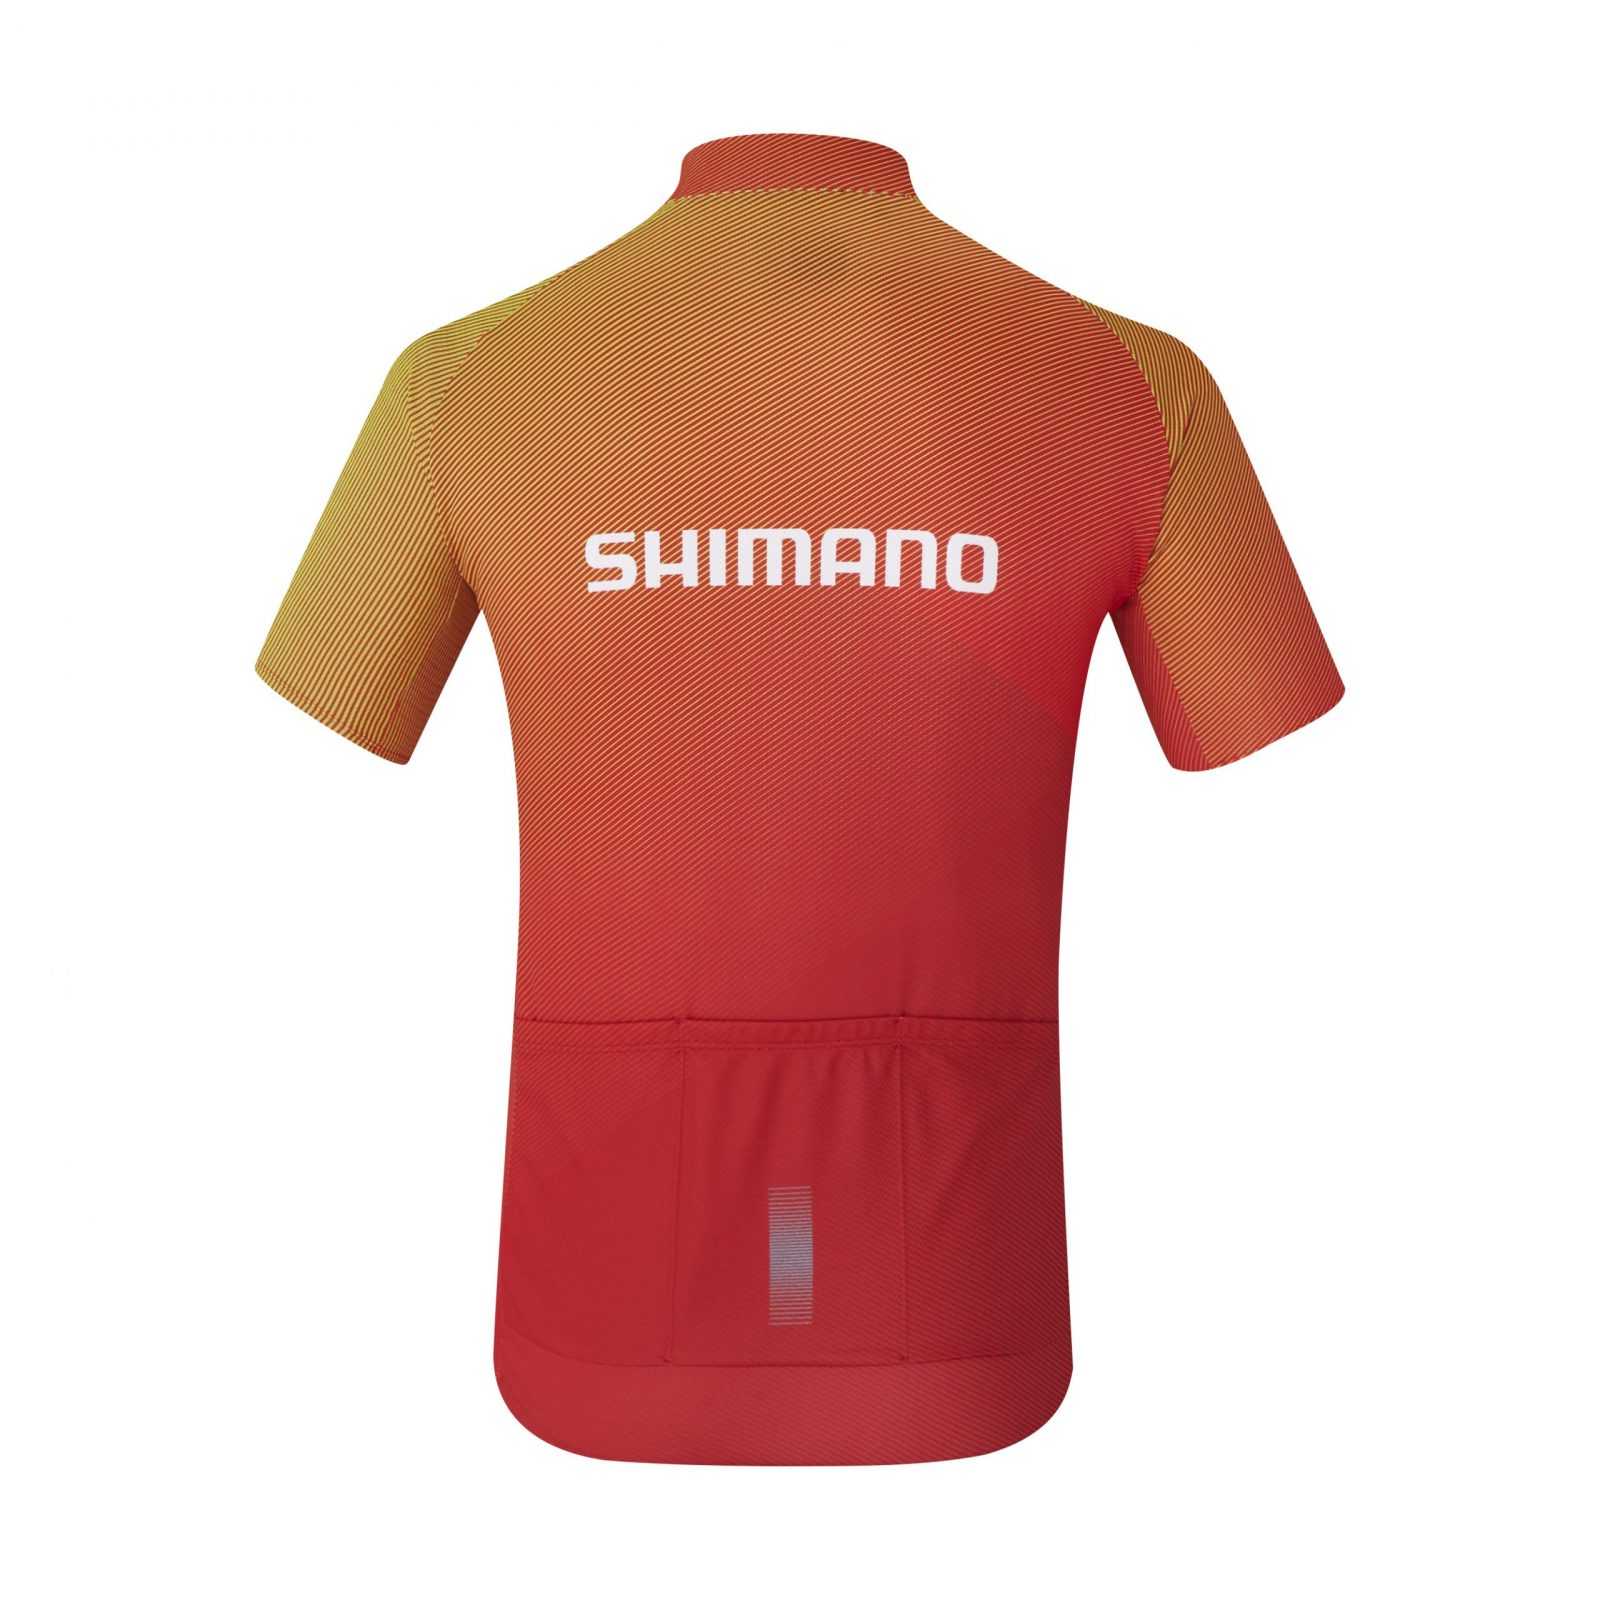 velodzhers-shimano-team2-chervone-rozm-l5caf3a01ebb89-original.jpg